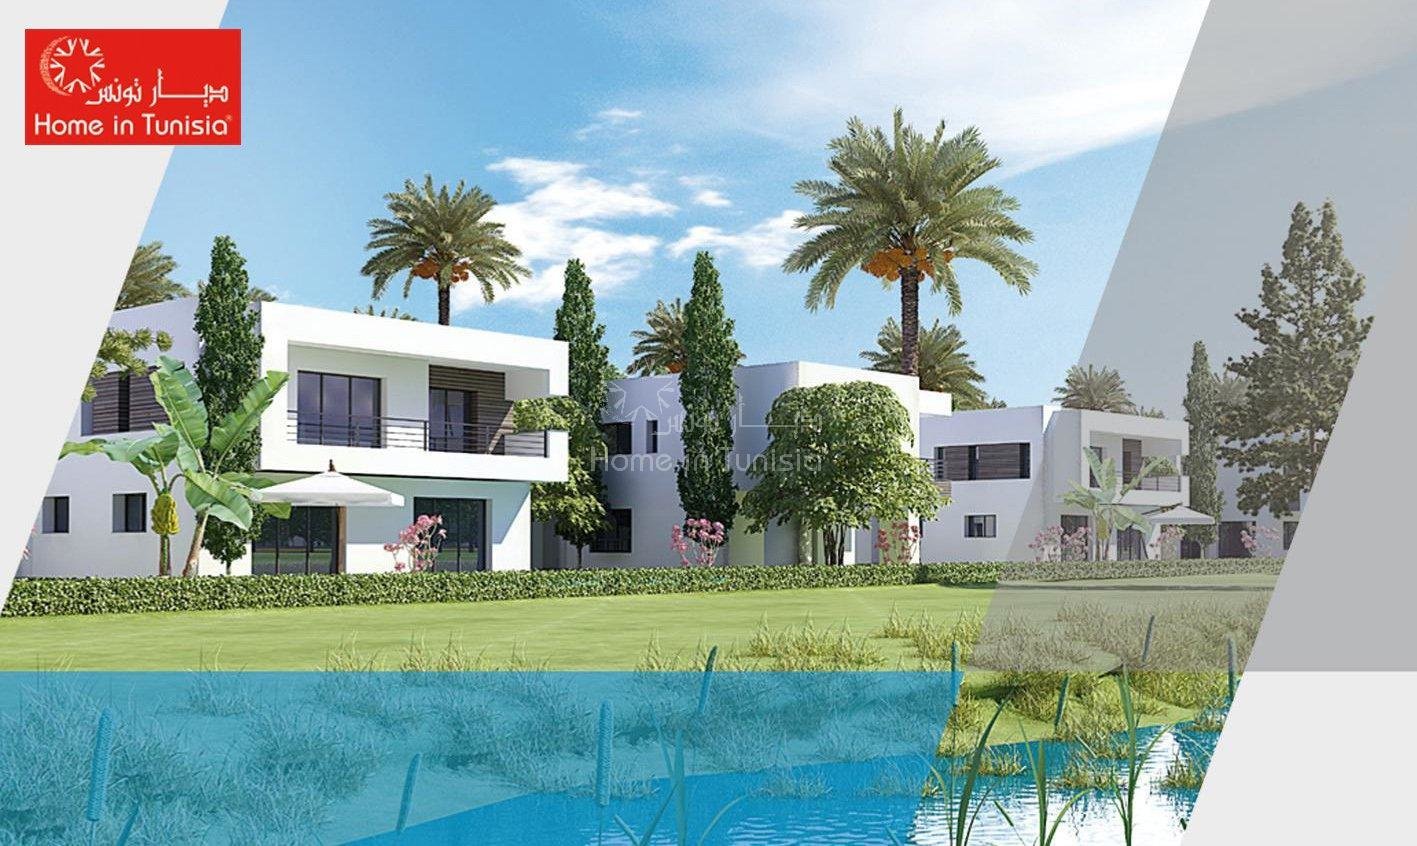 Villa golf isolée neuve de 375 m2 avec 4 chambres terrasse jardin piscine